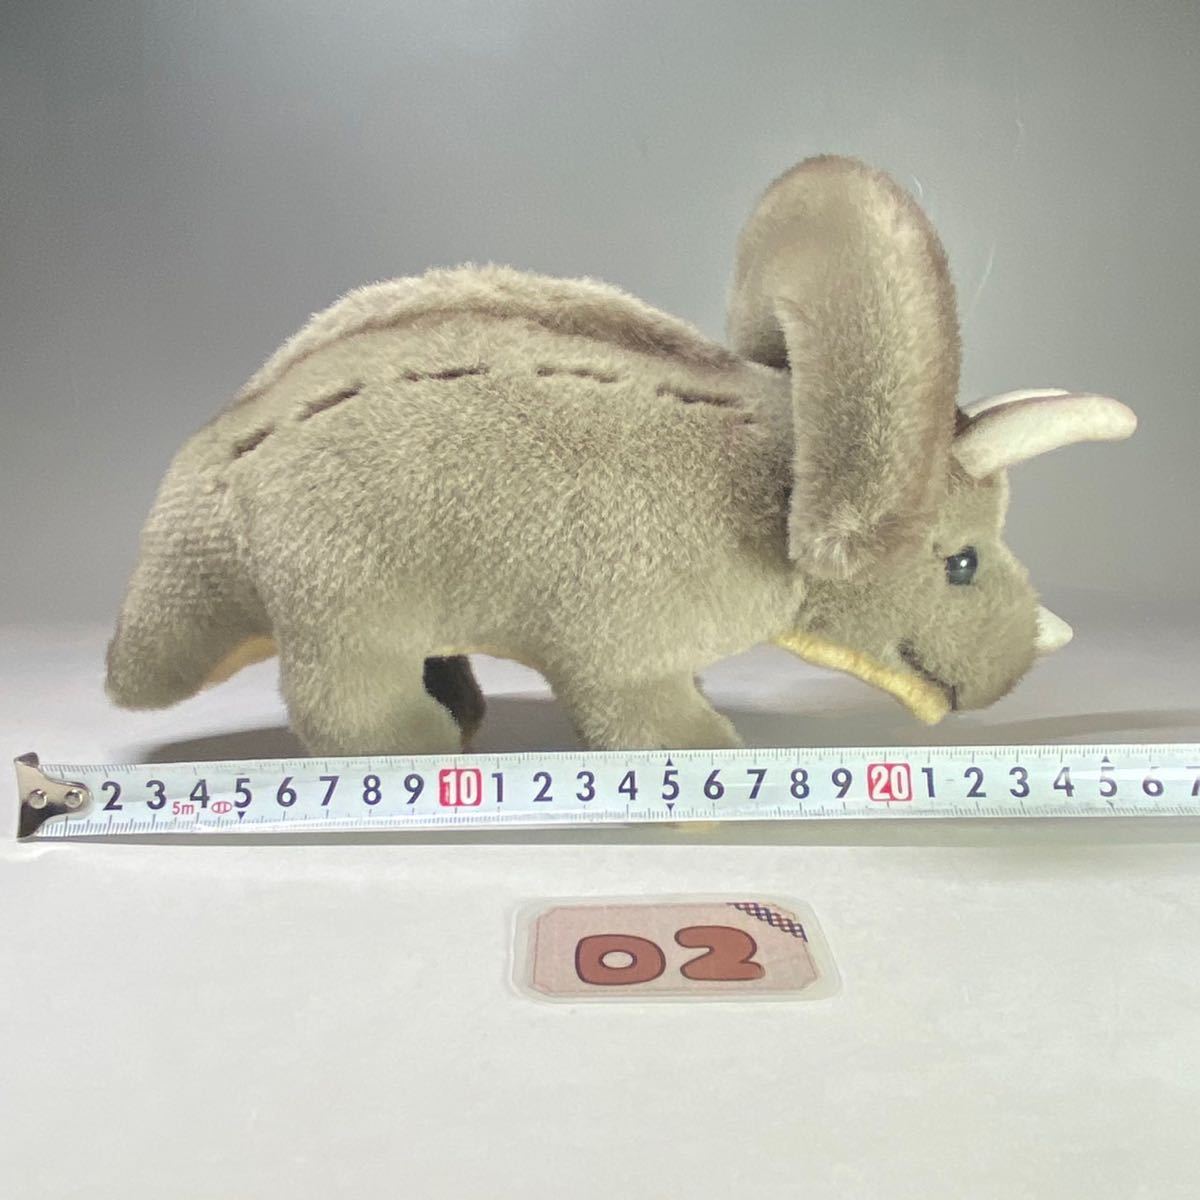 shu type steiff Германия мягкая игрушка динозавр tolikelatops симпатичный украшение интерьер плюшевый мишка производитель 